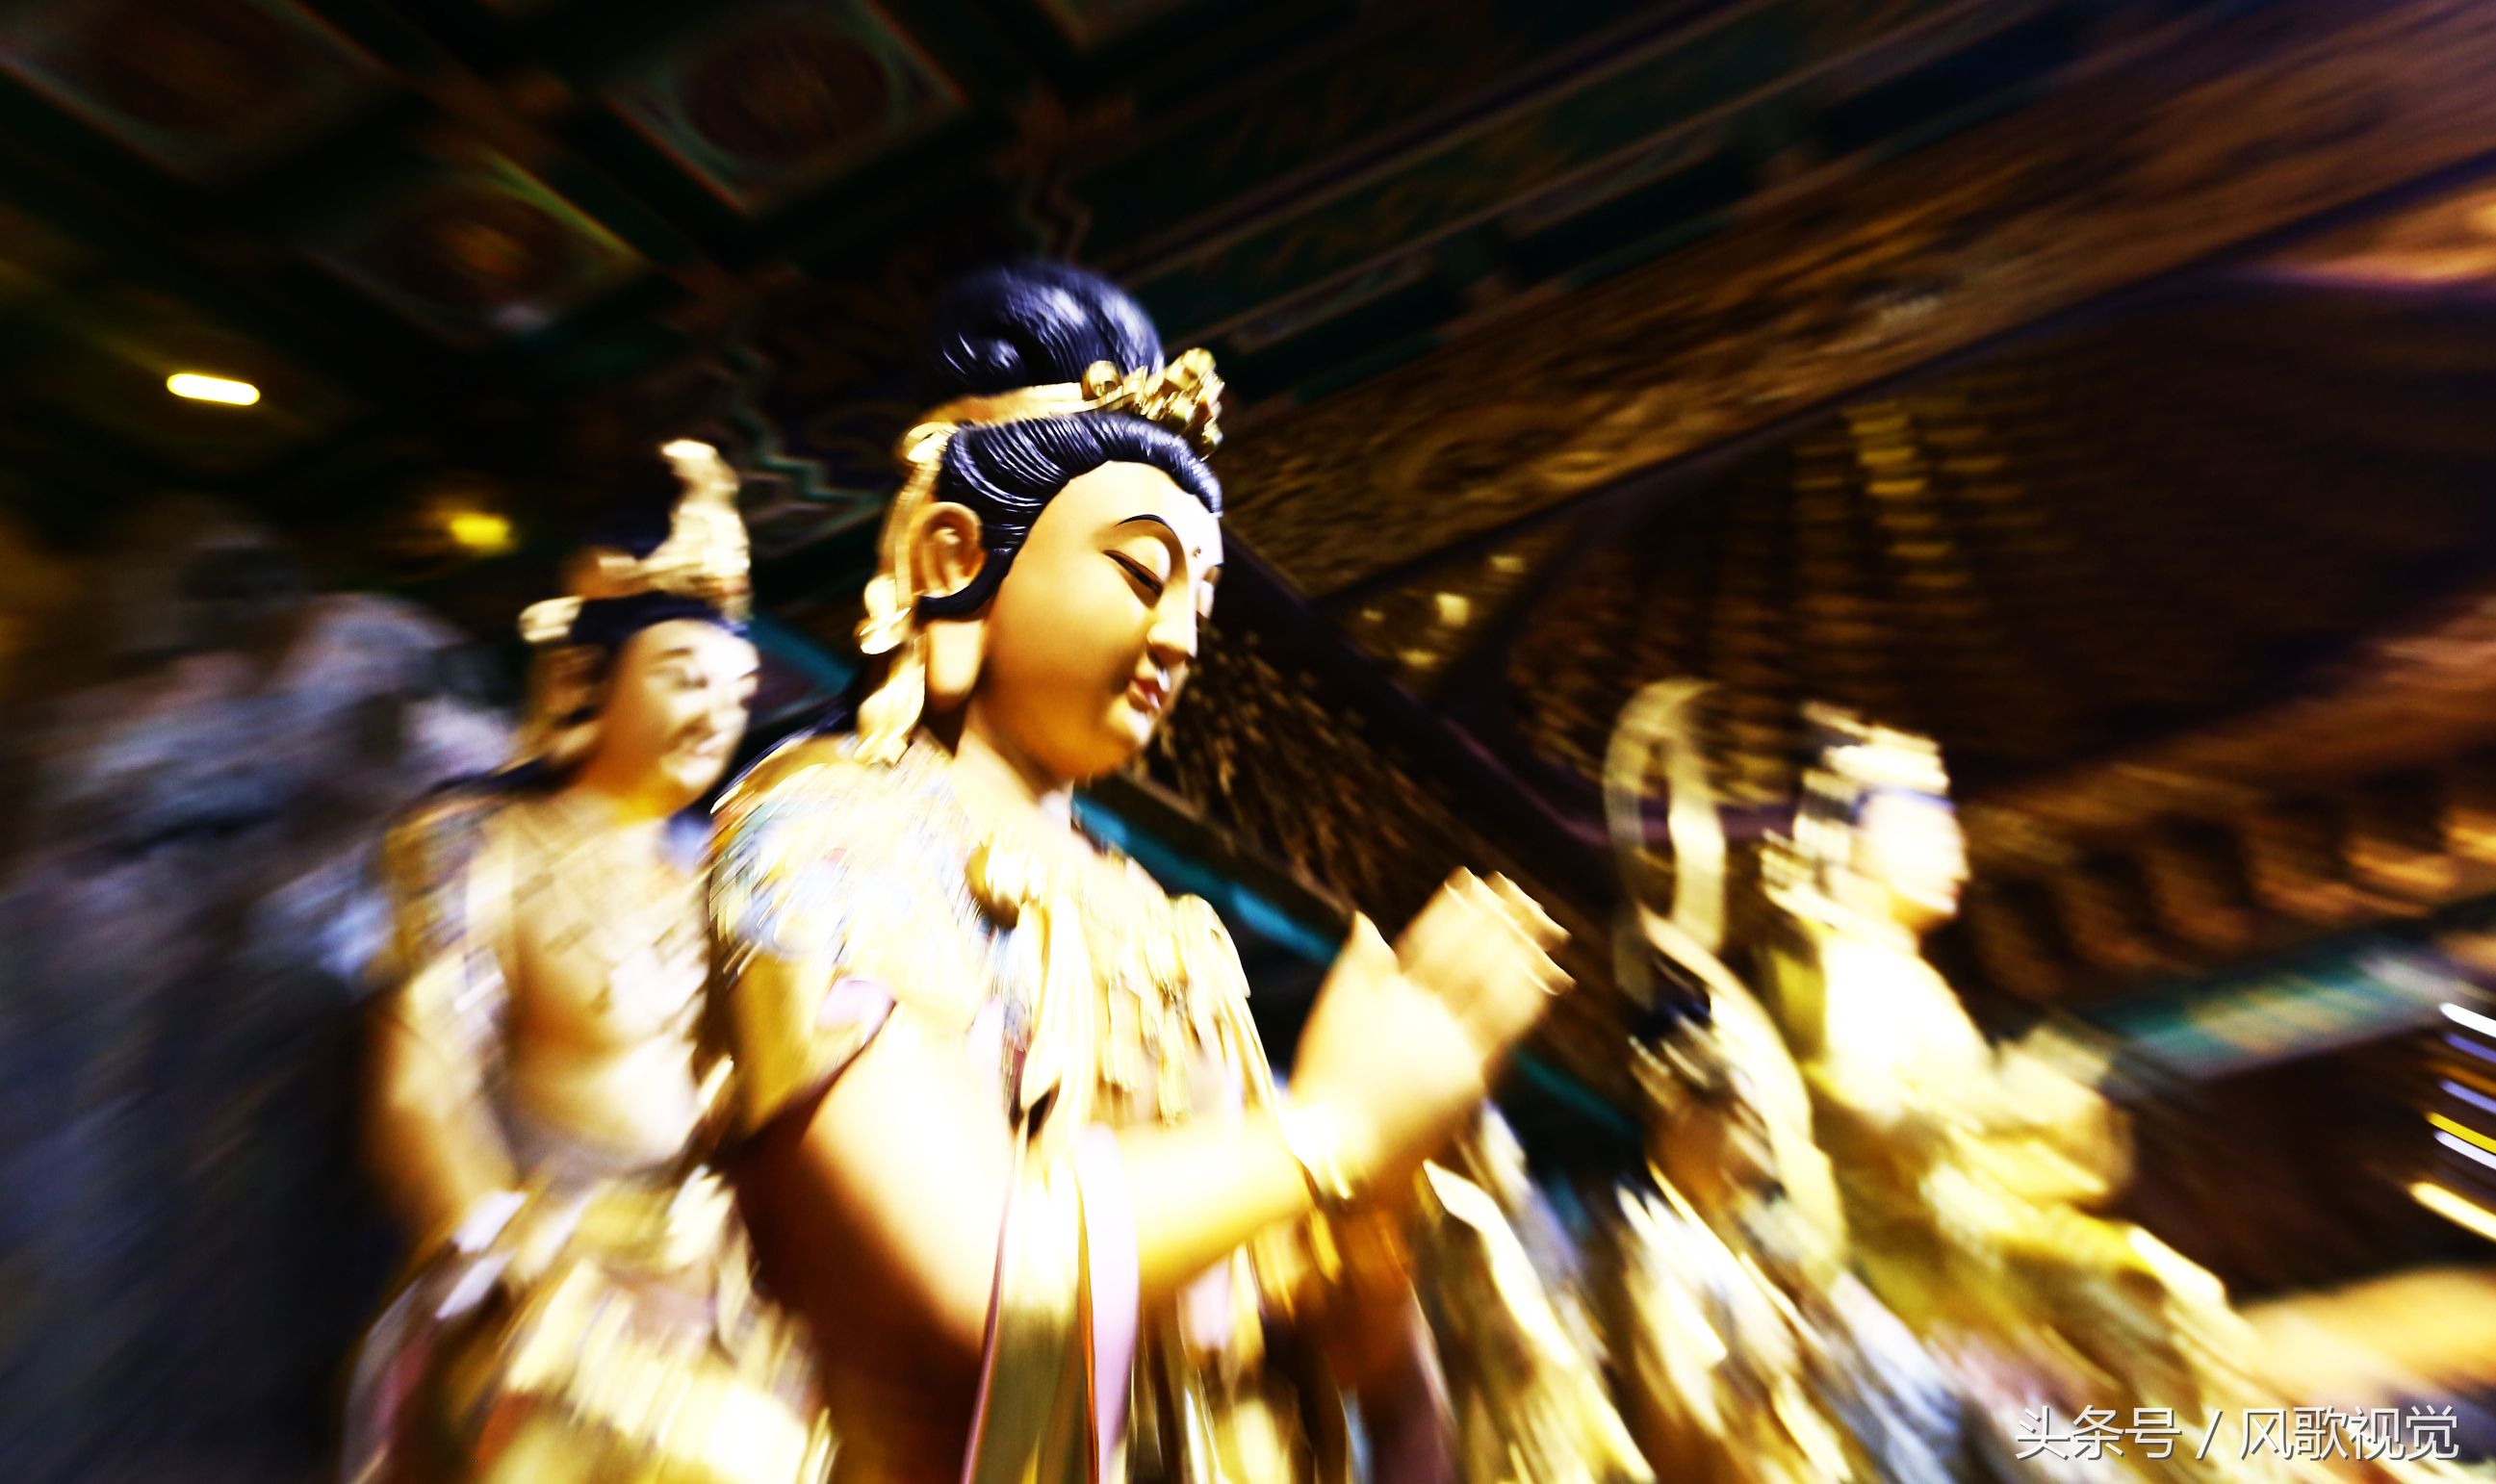 谁都知道南海观音，但你可见过观音菩萨33种化身，这是佛教传奇吗